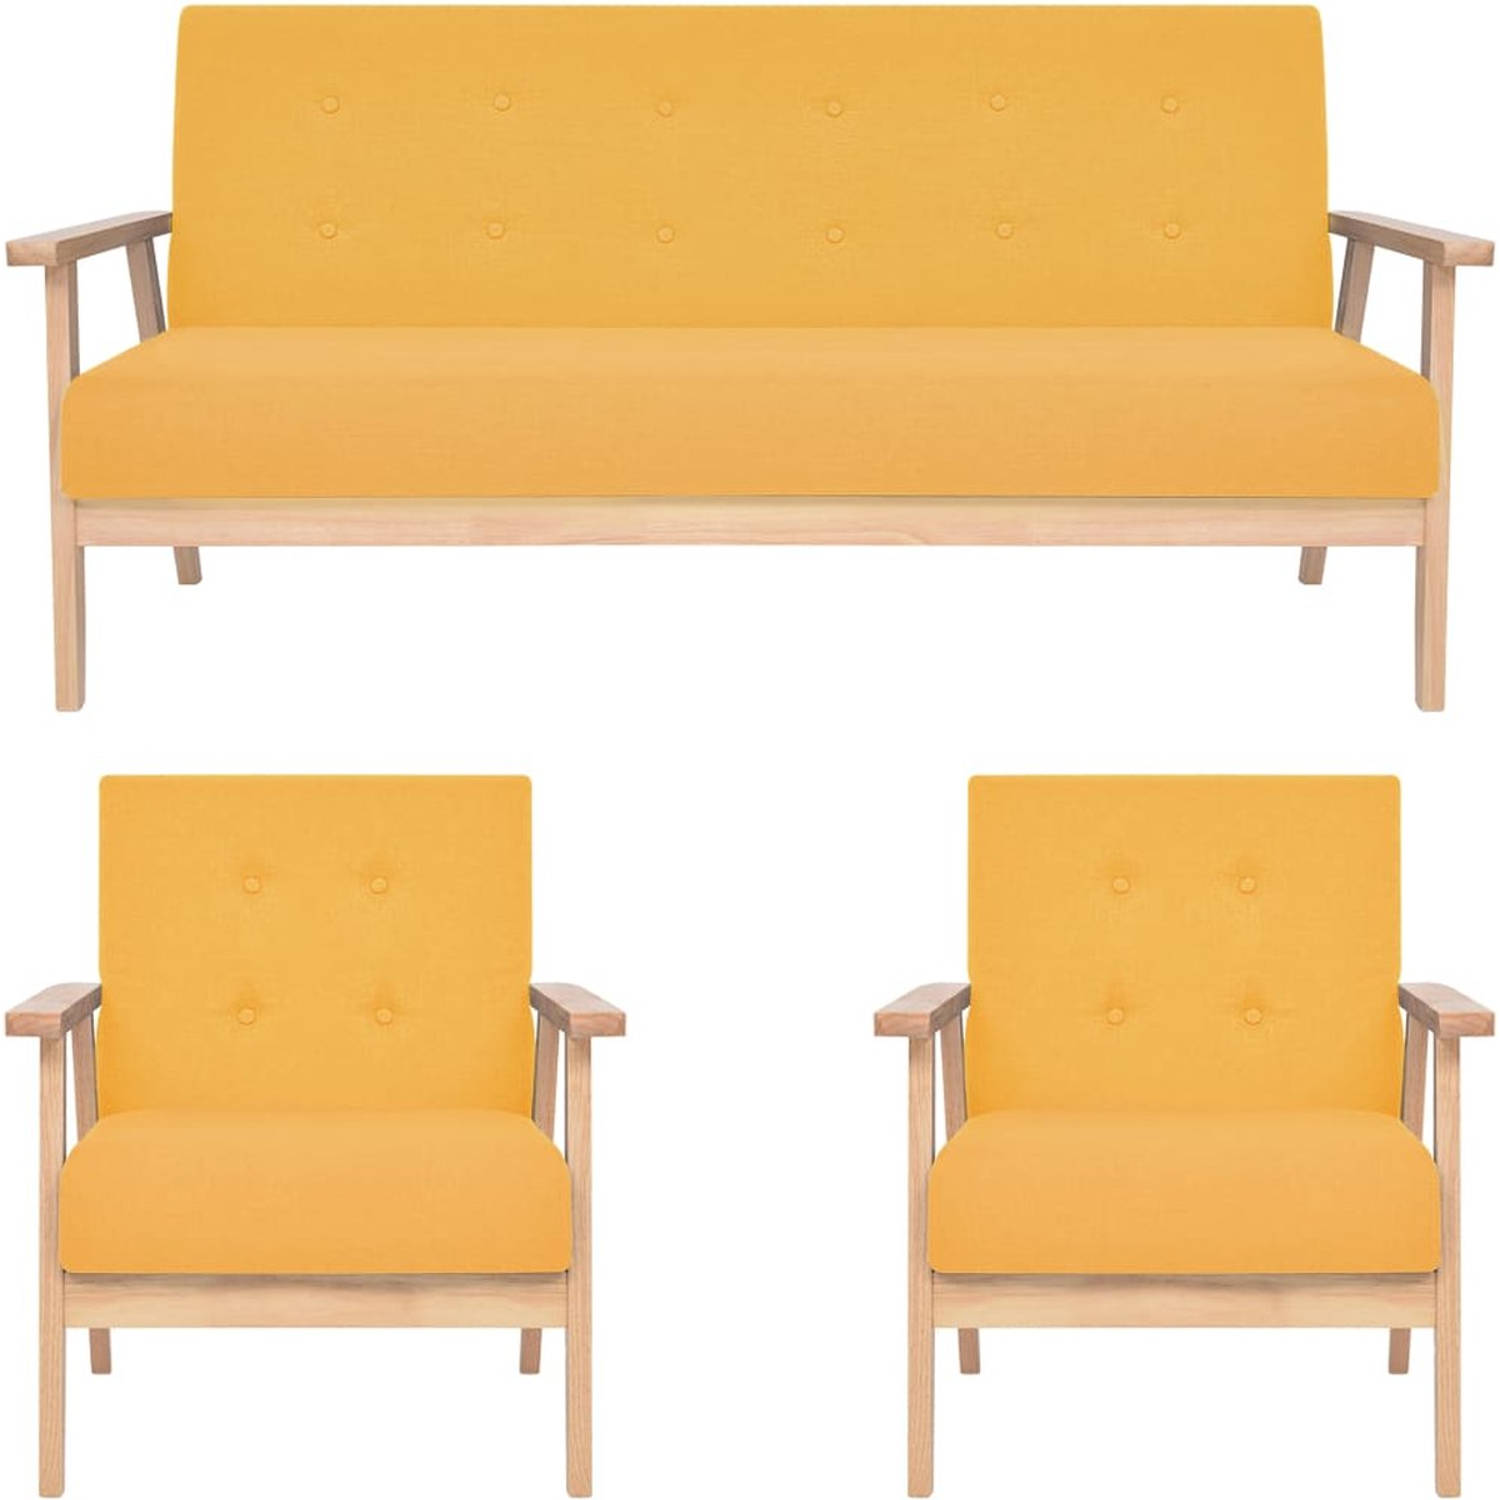 The Living Store Loungebank Geel - Polyester - Houten frame - Set van 2 fauteuils en 1 bank - Afmetingen fauteuil- 64.5 x 67 x 73.5 cm - Afmetingen bank- 158 x 67 x 73.5 cm - Zitho